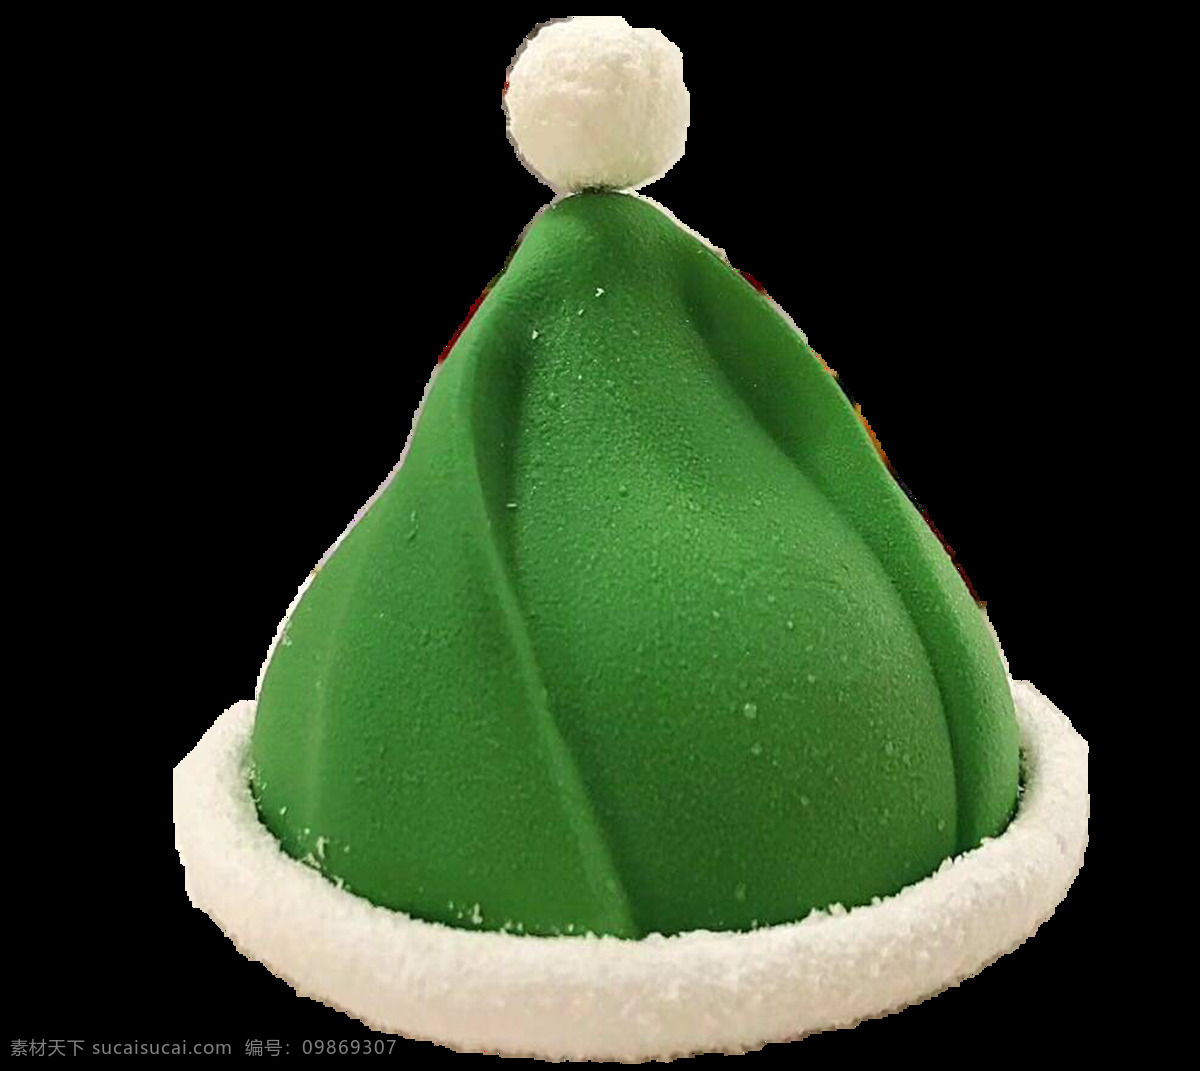 绿色 圣诞 帽 装饰品 vi素材 服装 帽子 圣诞节 圣诞帽 圣诞饰品 饰品